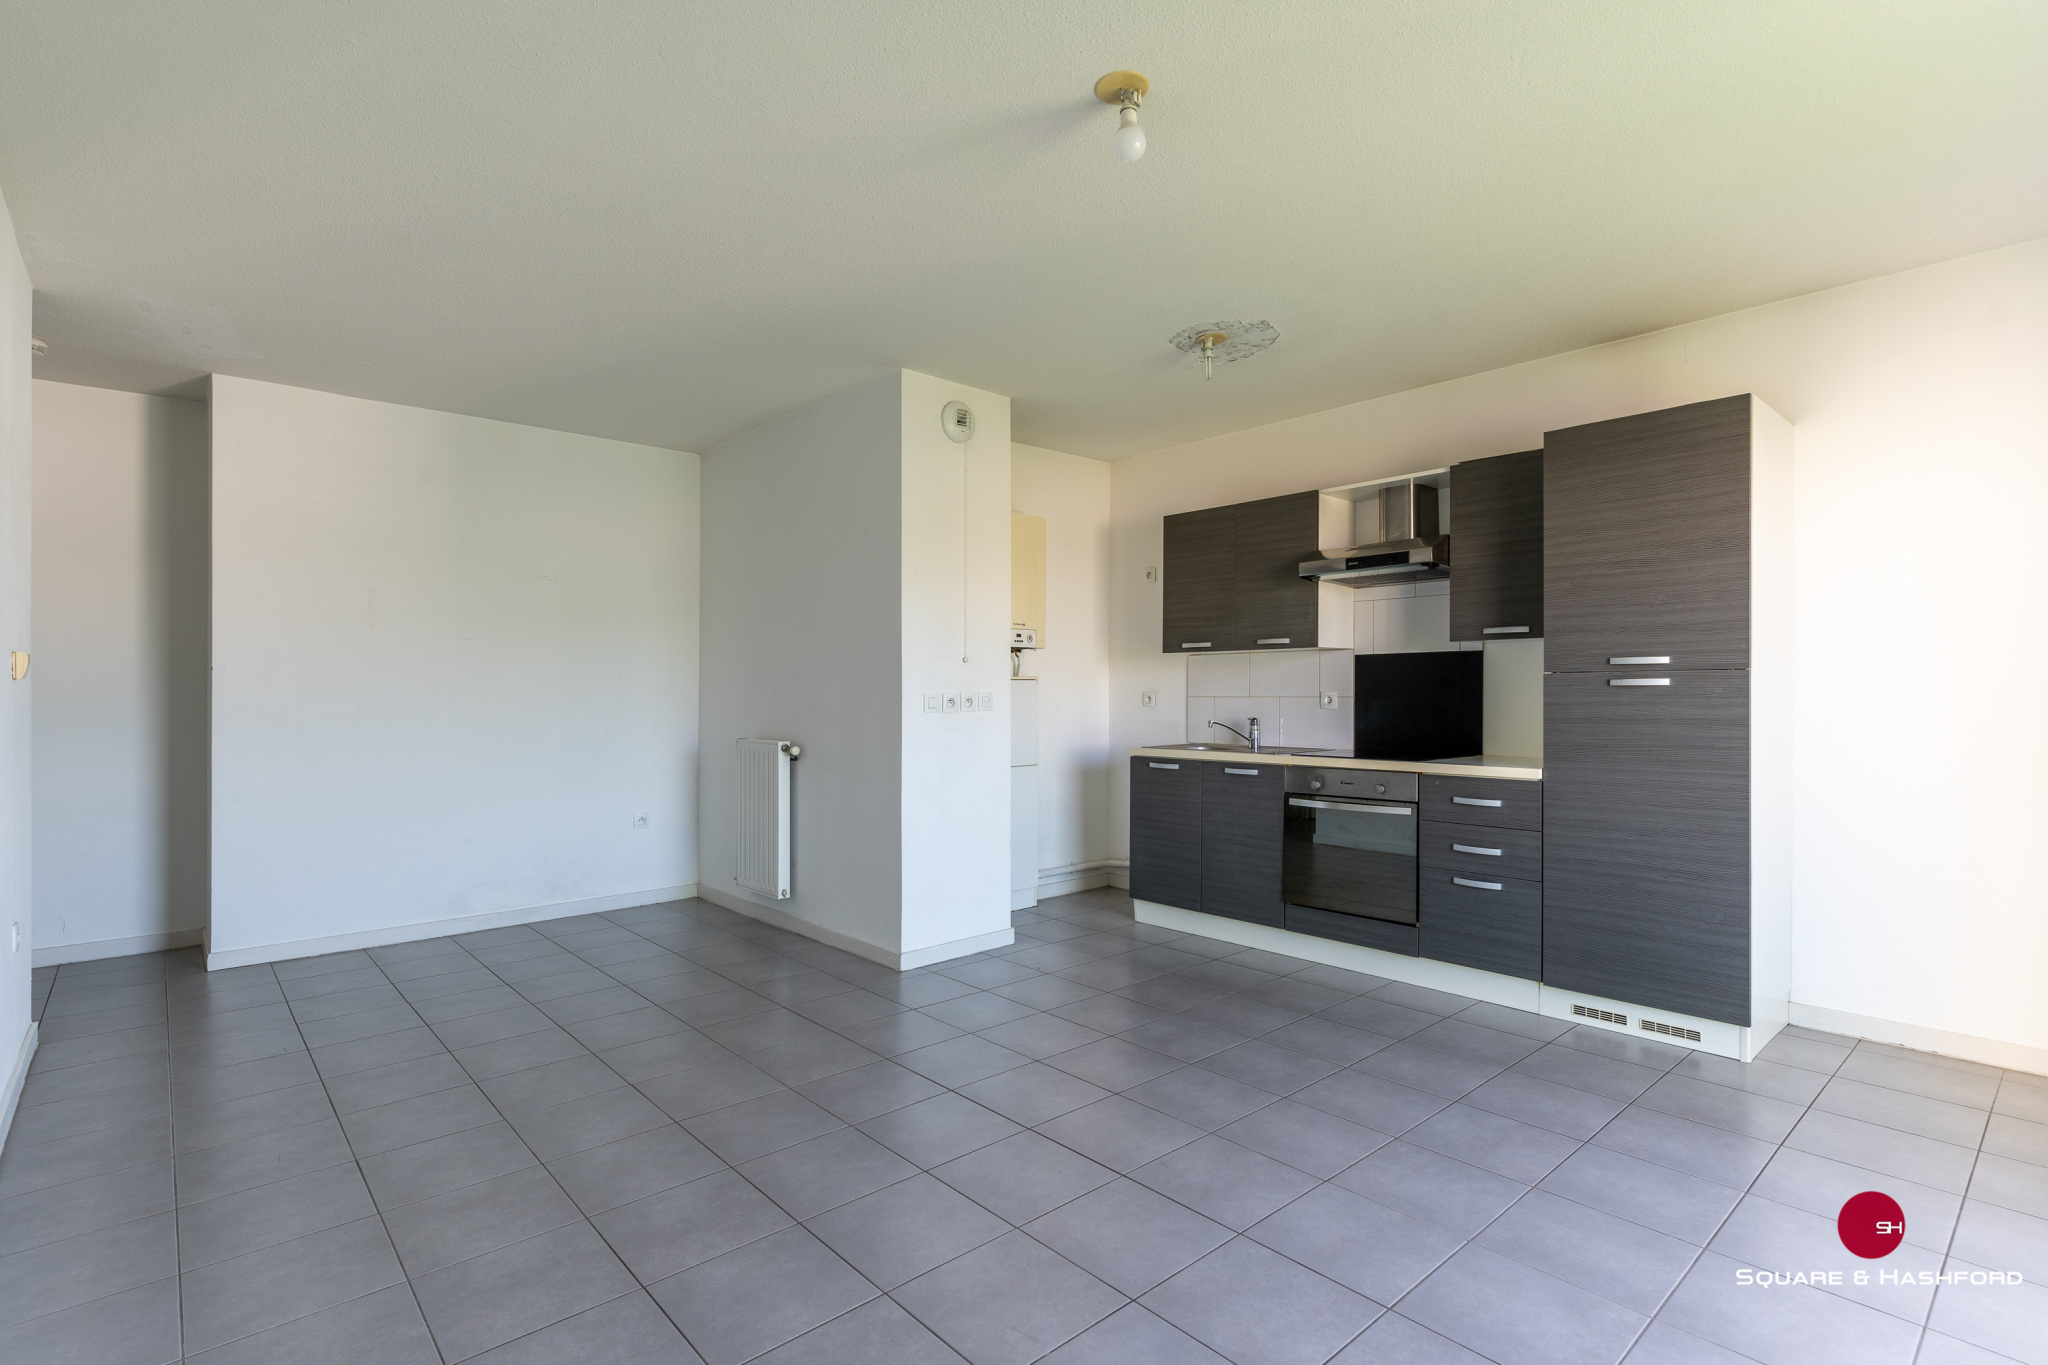 A VENDRE Appartement 3 pièces - 60 m² - BORDEAUX